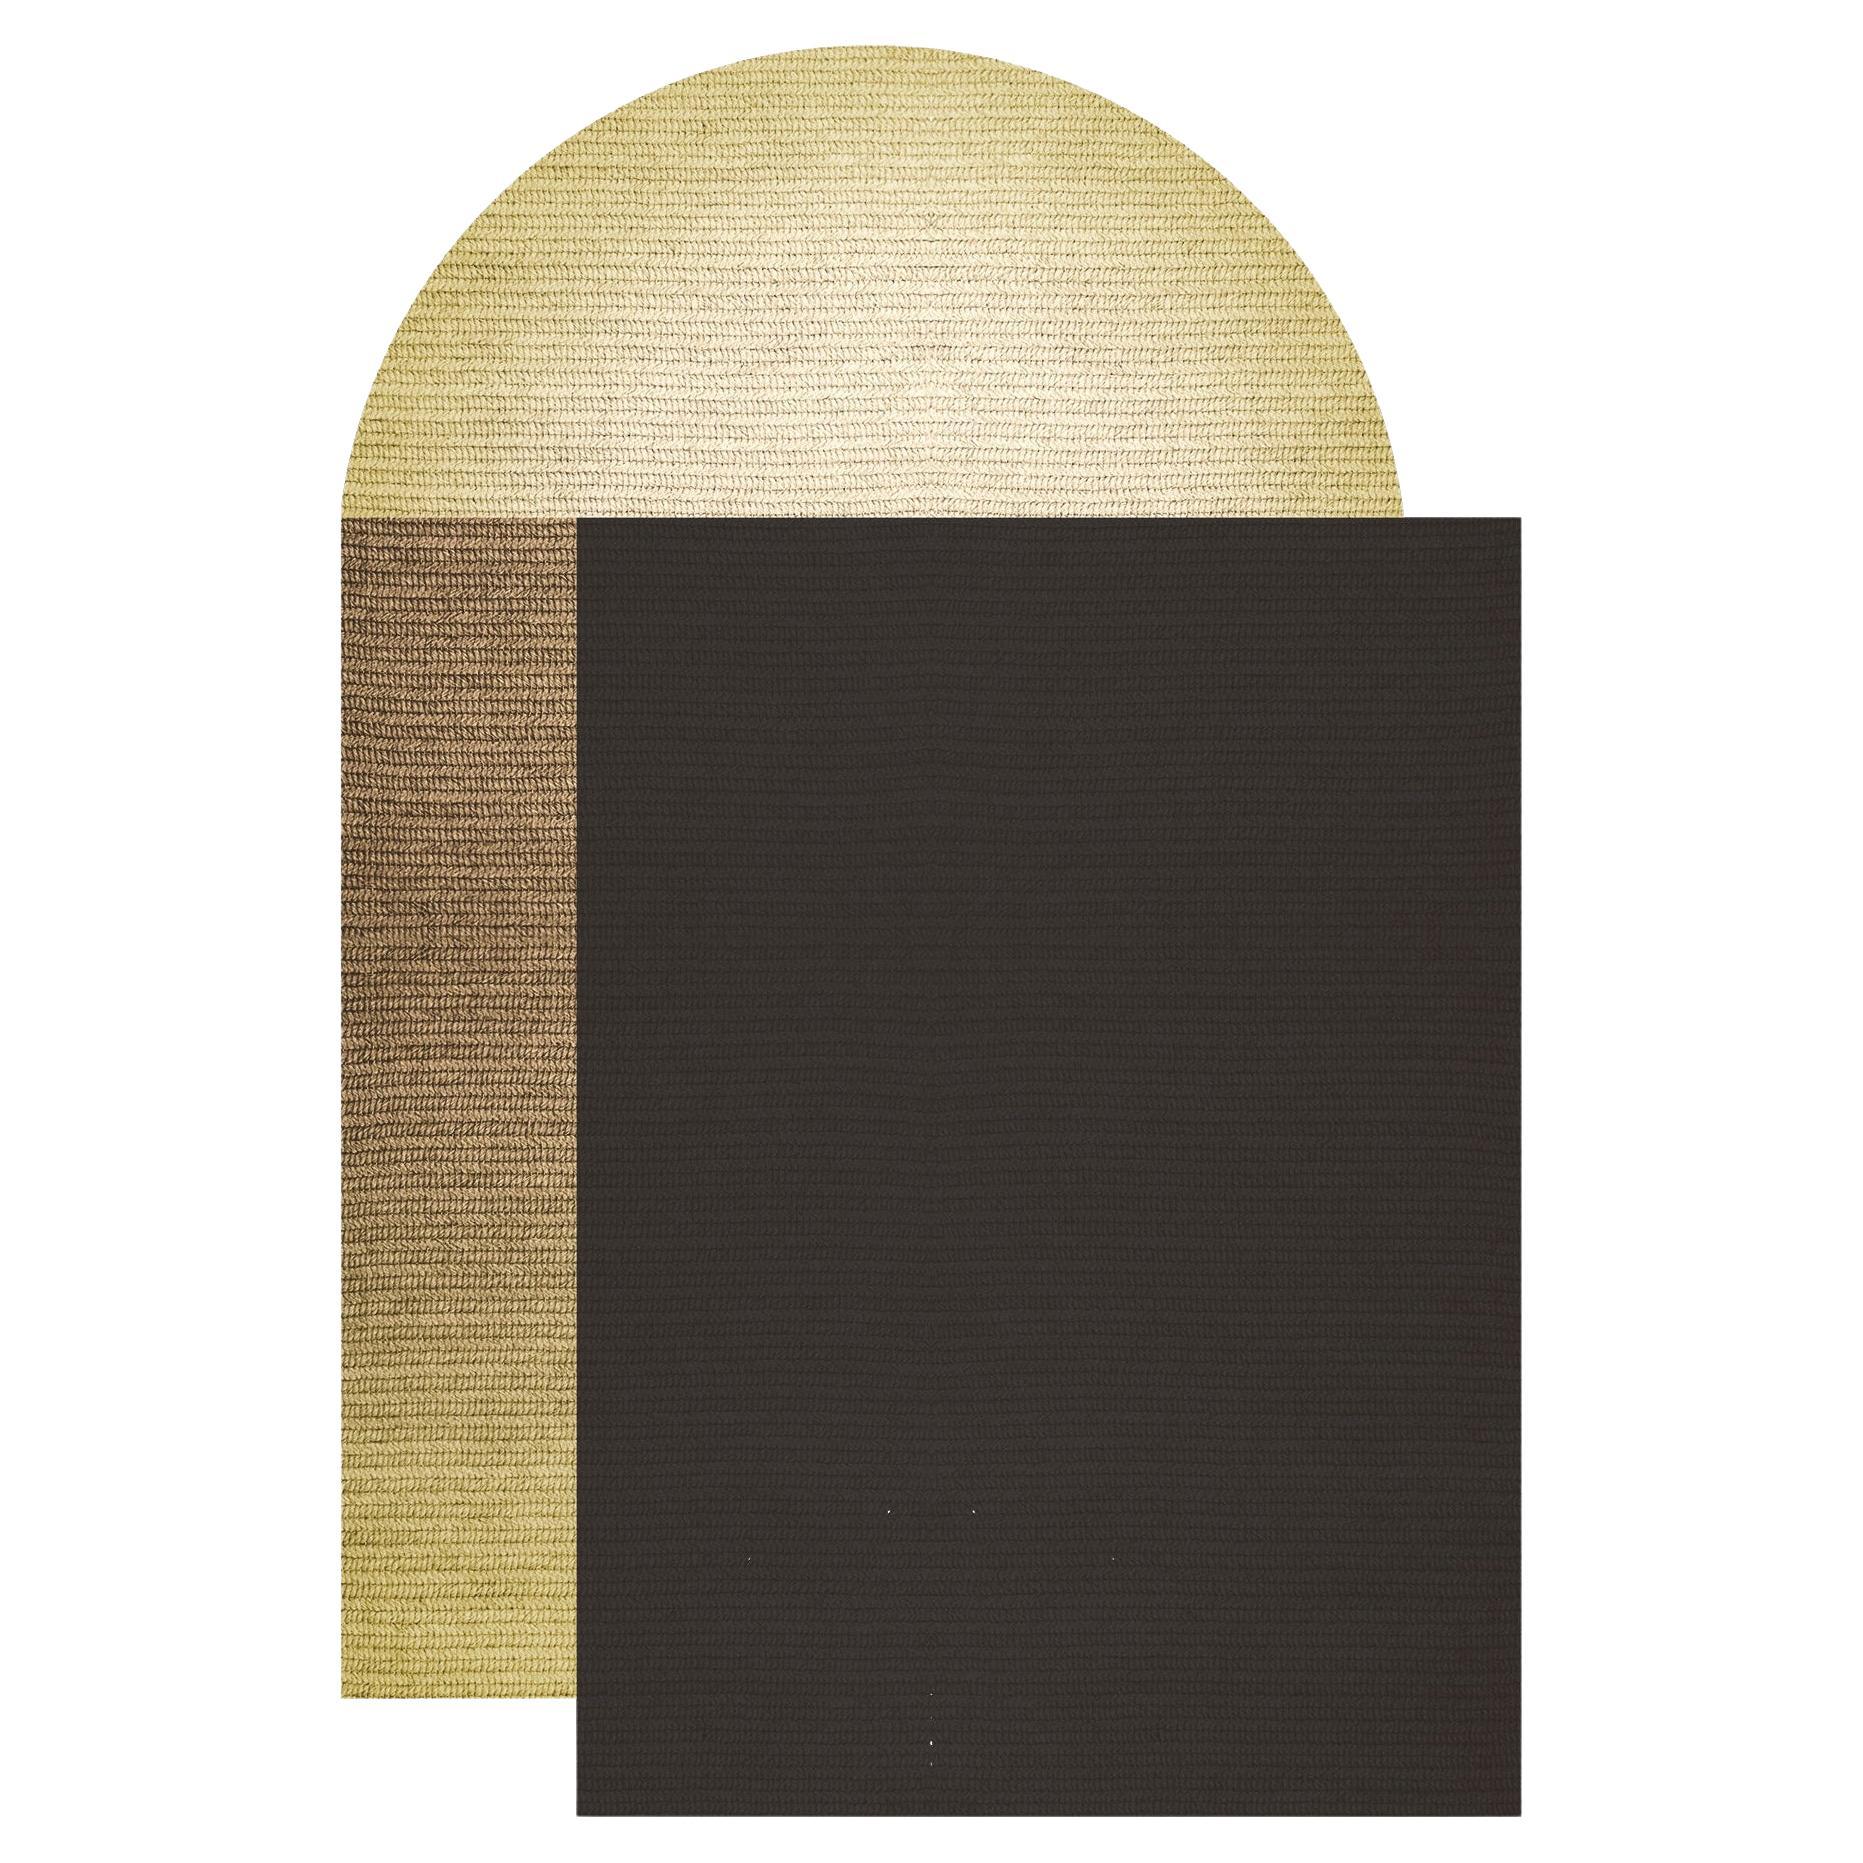 „Fade“-Teppich aus Abaca, Farbe „Pampas“, 160x240cm, von Claire Vos für Musett Design